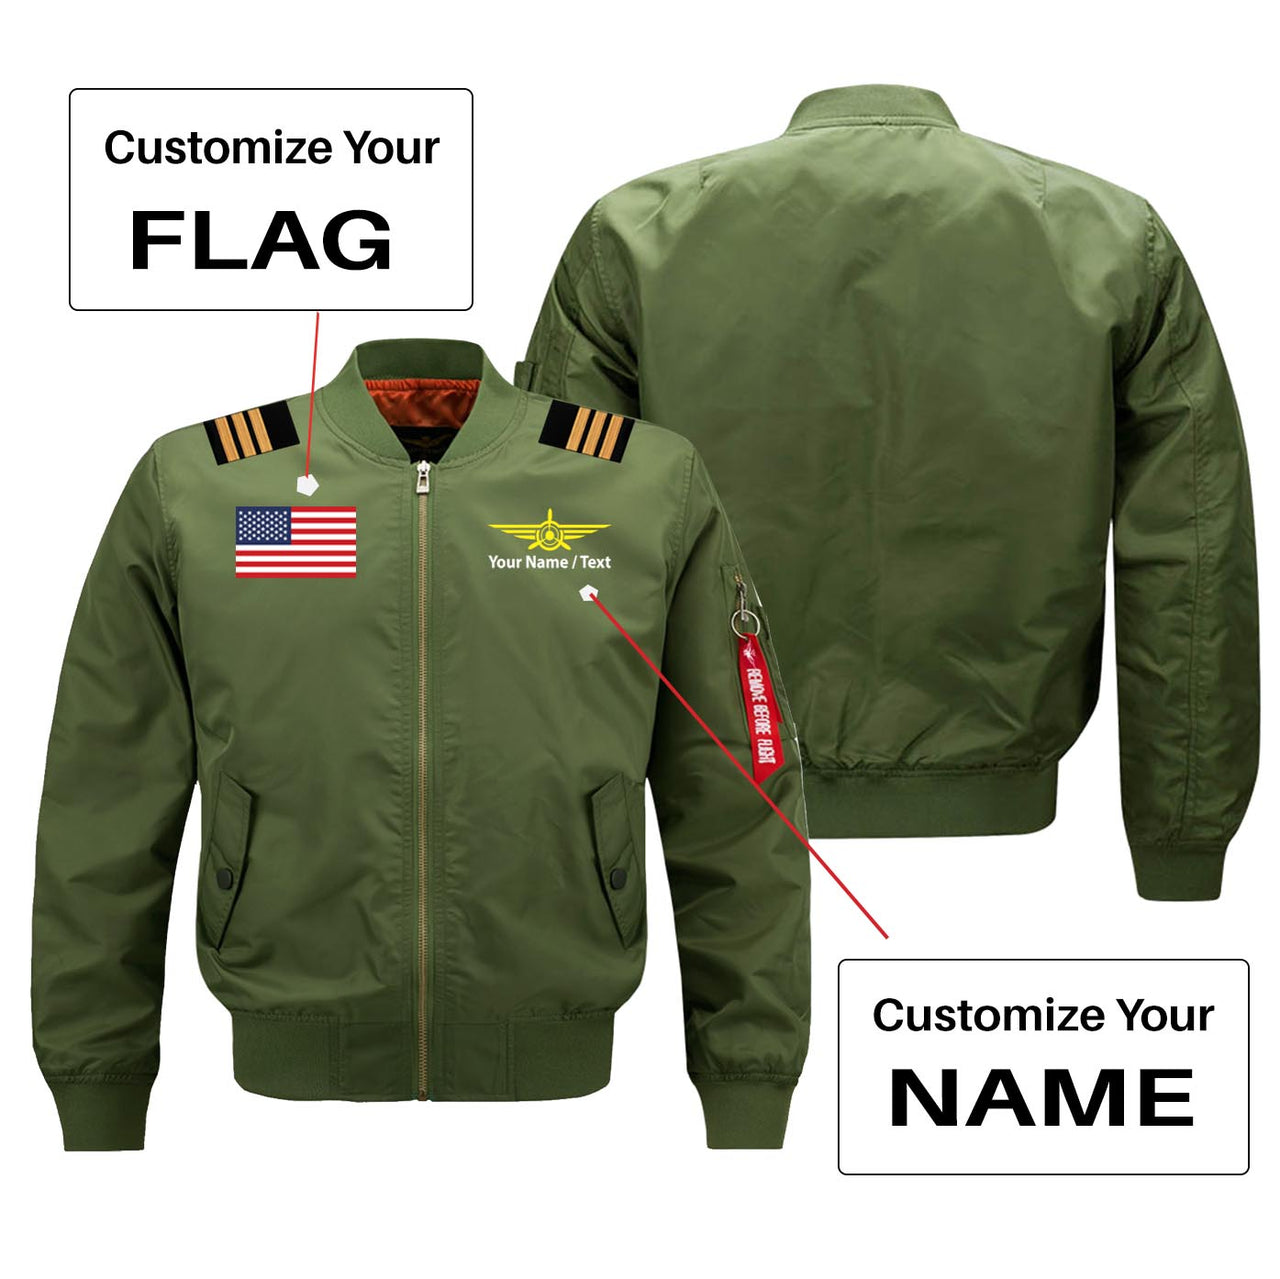 Custom Flag & Name with EPAULETTES (Badge 3) Designed Pilot Jackets